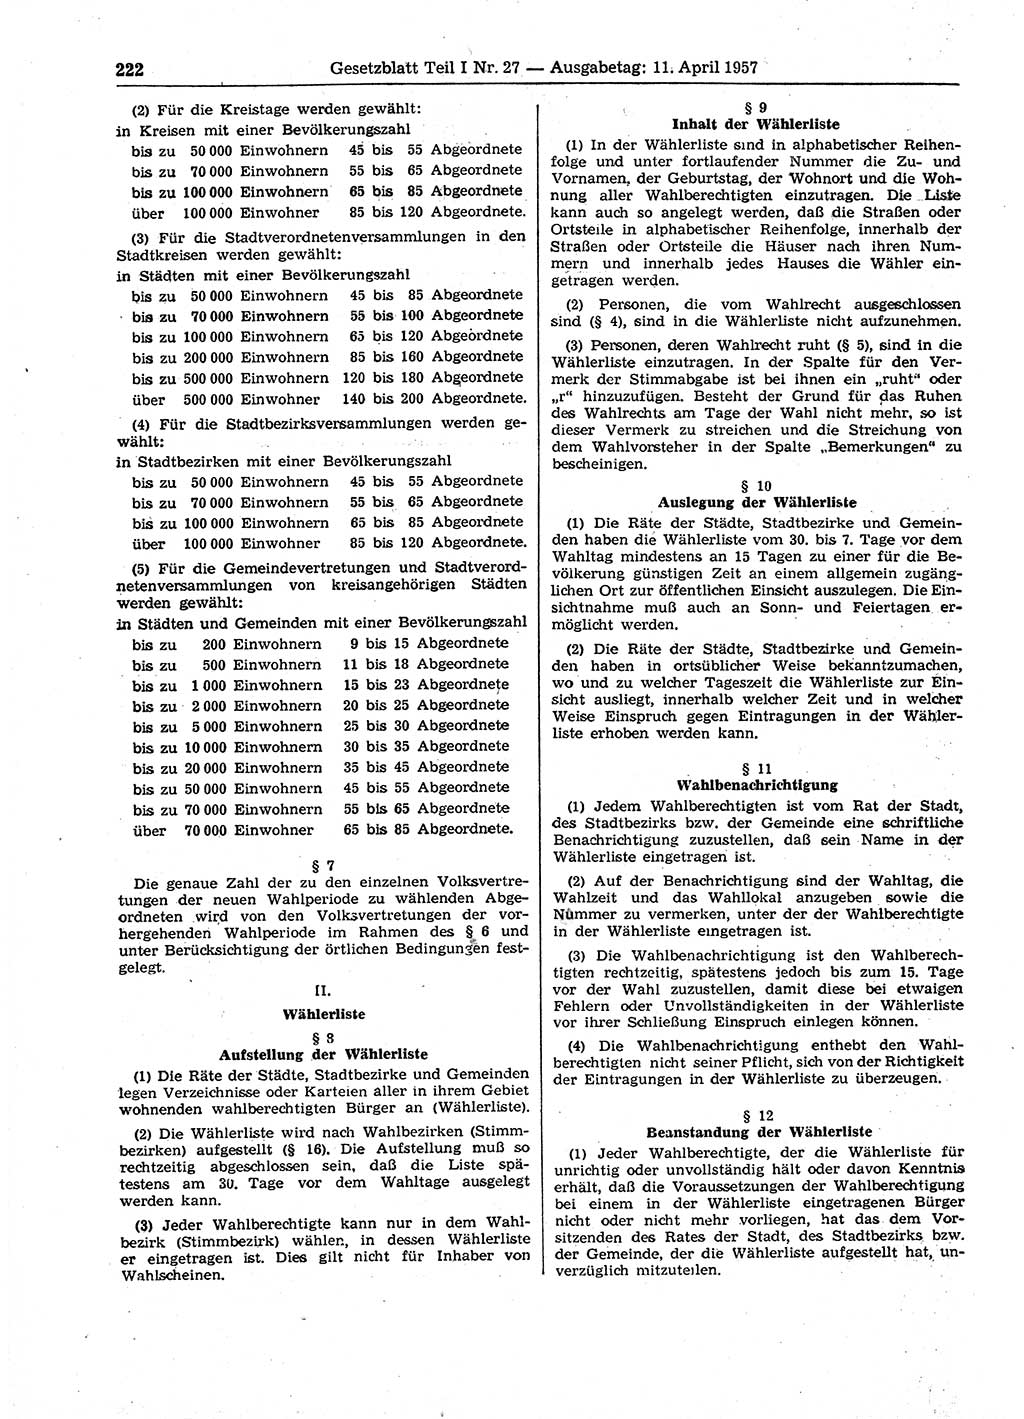 Gesetzblatt (GBl.) der Deutschen Demokratischen Republik (DDR) Teil Ⅰ 1957, Seite 222 (GBl. DDR Ⅰ 1957, S. 222)